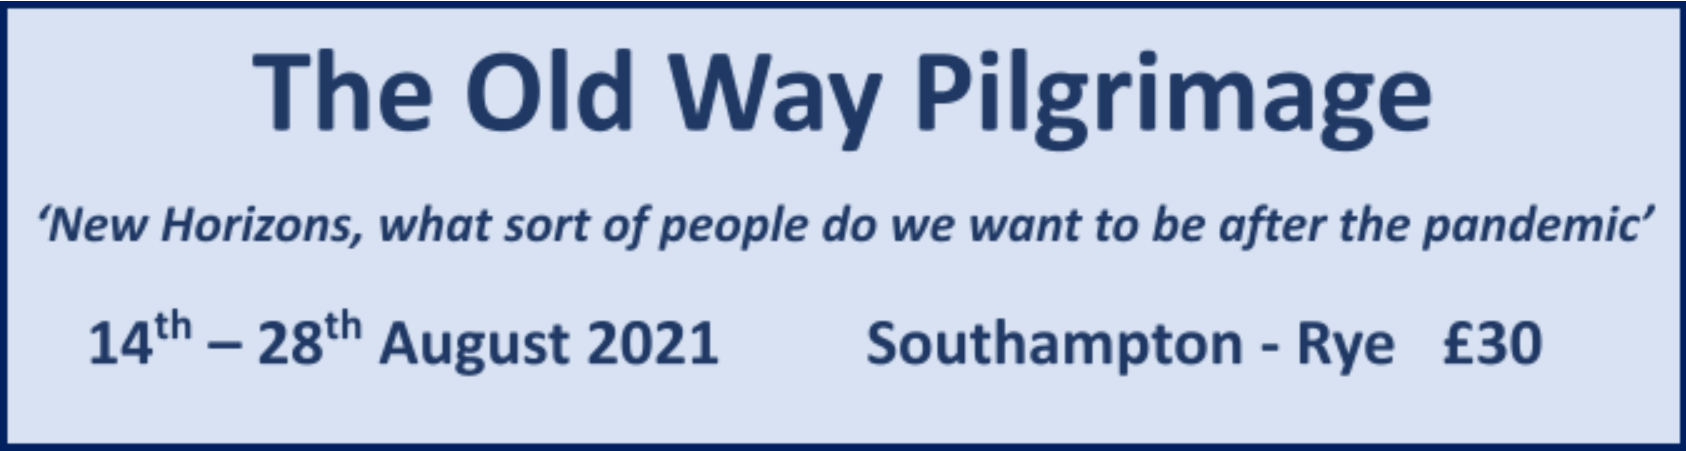 DABEWP Old Way Pilgrimage 2021 Southampton-Rye